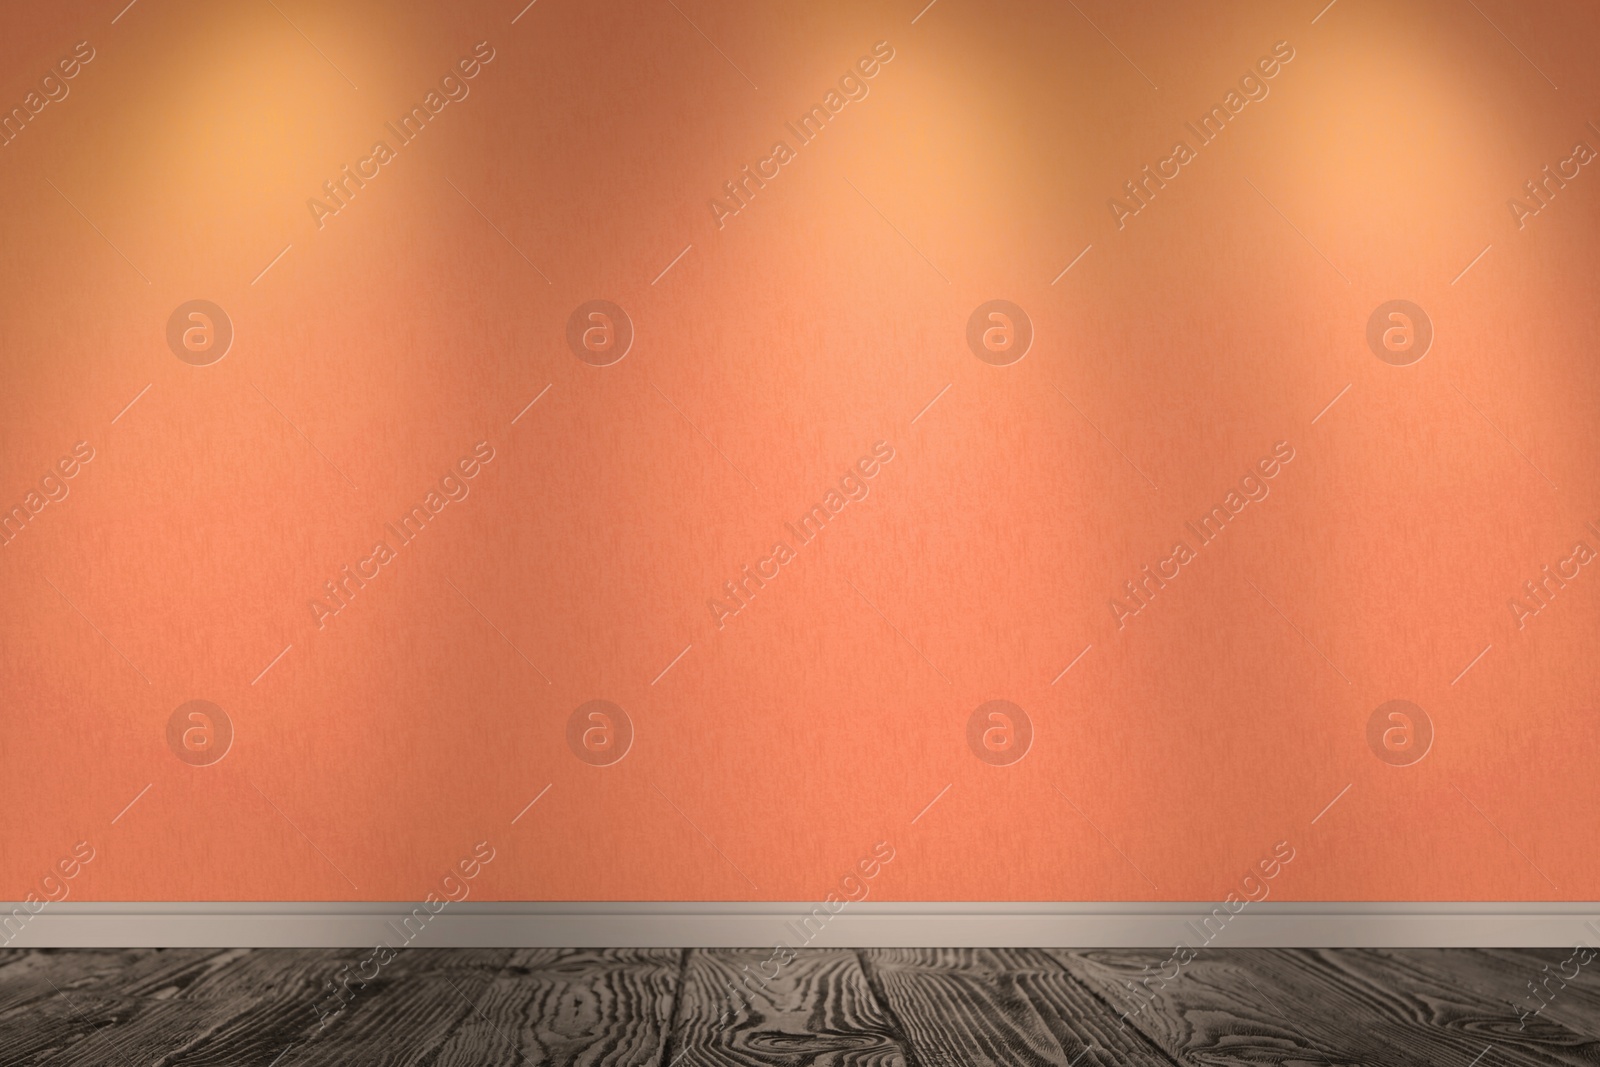 Image of Orange wallpaper and wooden floor in room